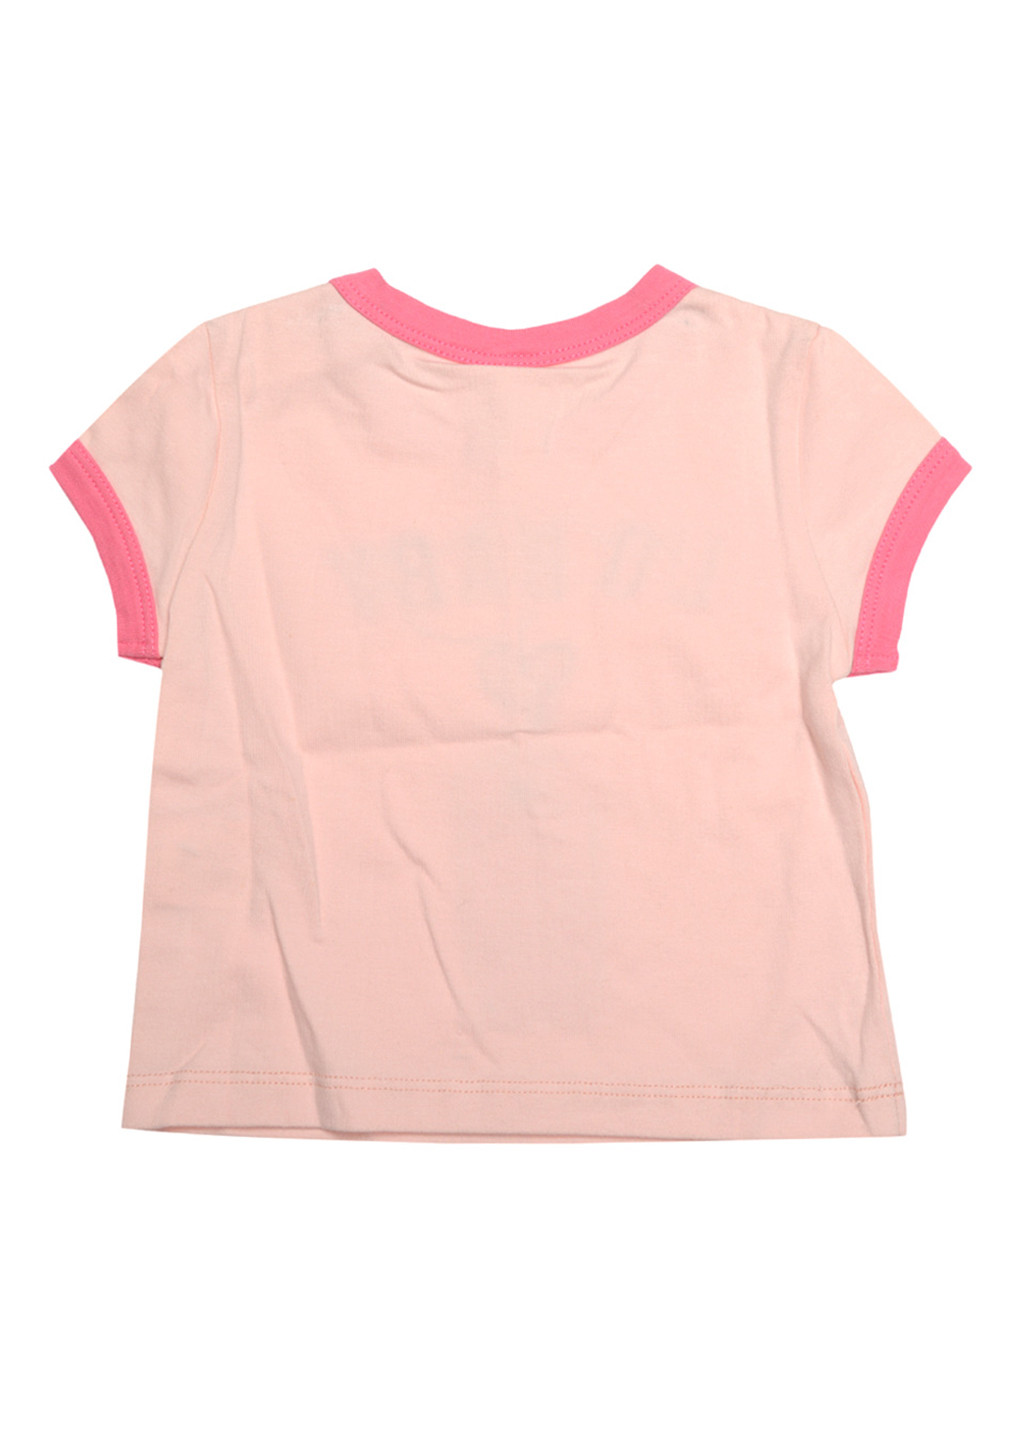 Розовая летняя футболка с коротким рукавом LO Baby